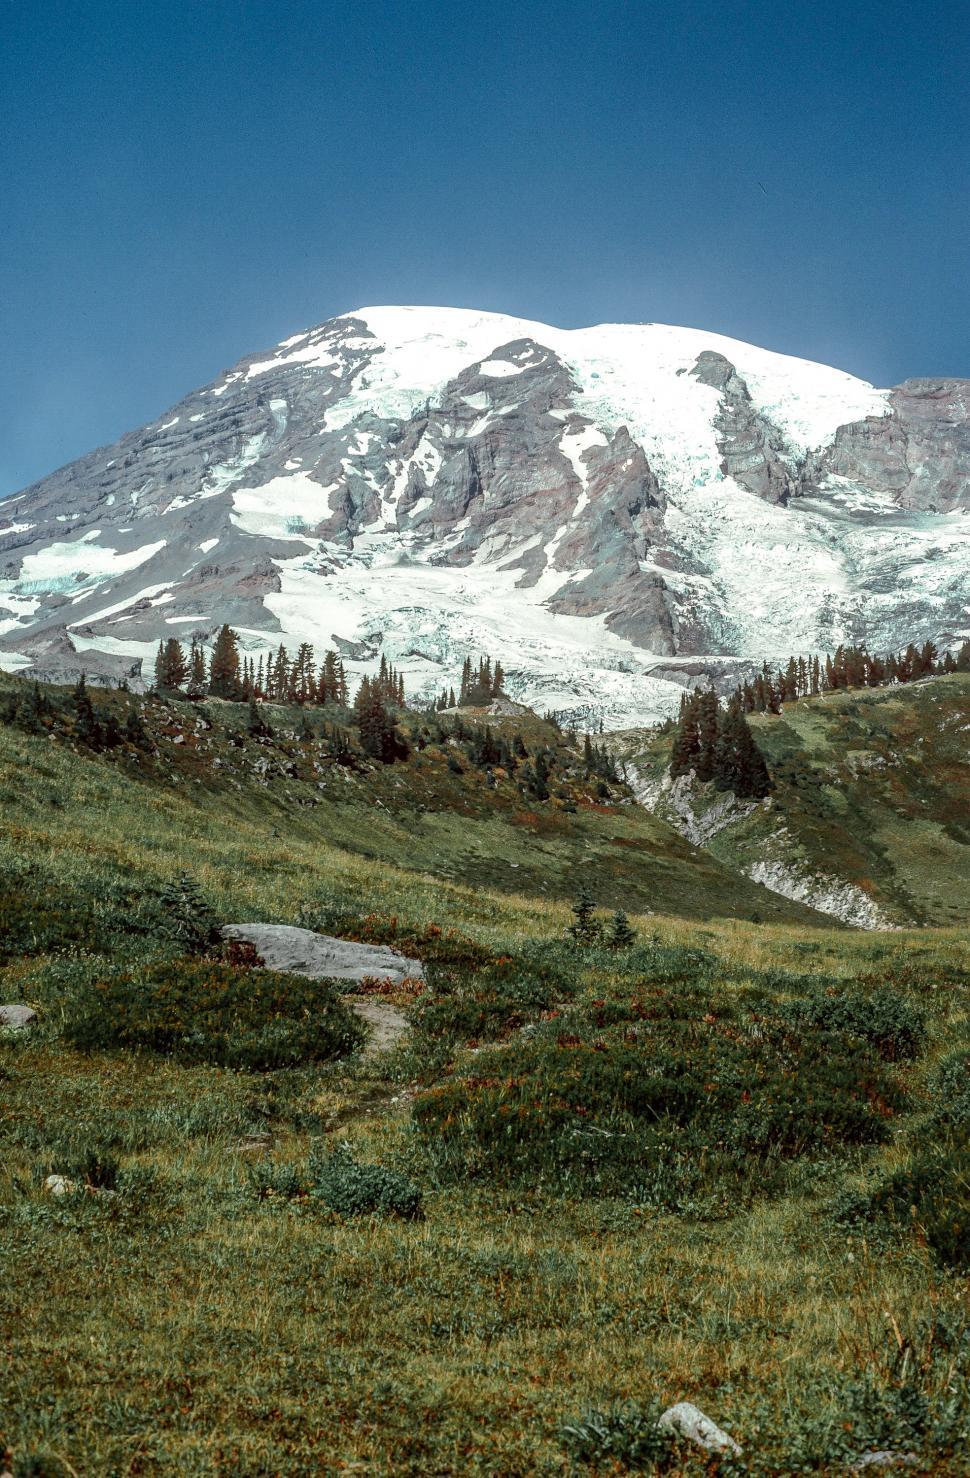 Free Image of Mount Rainier Mountain 